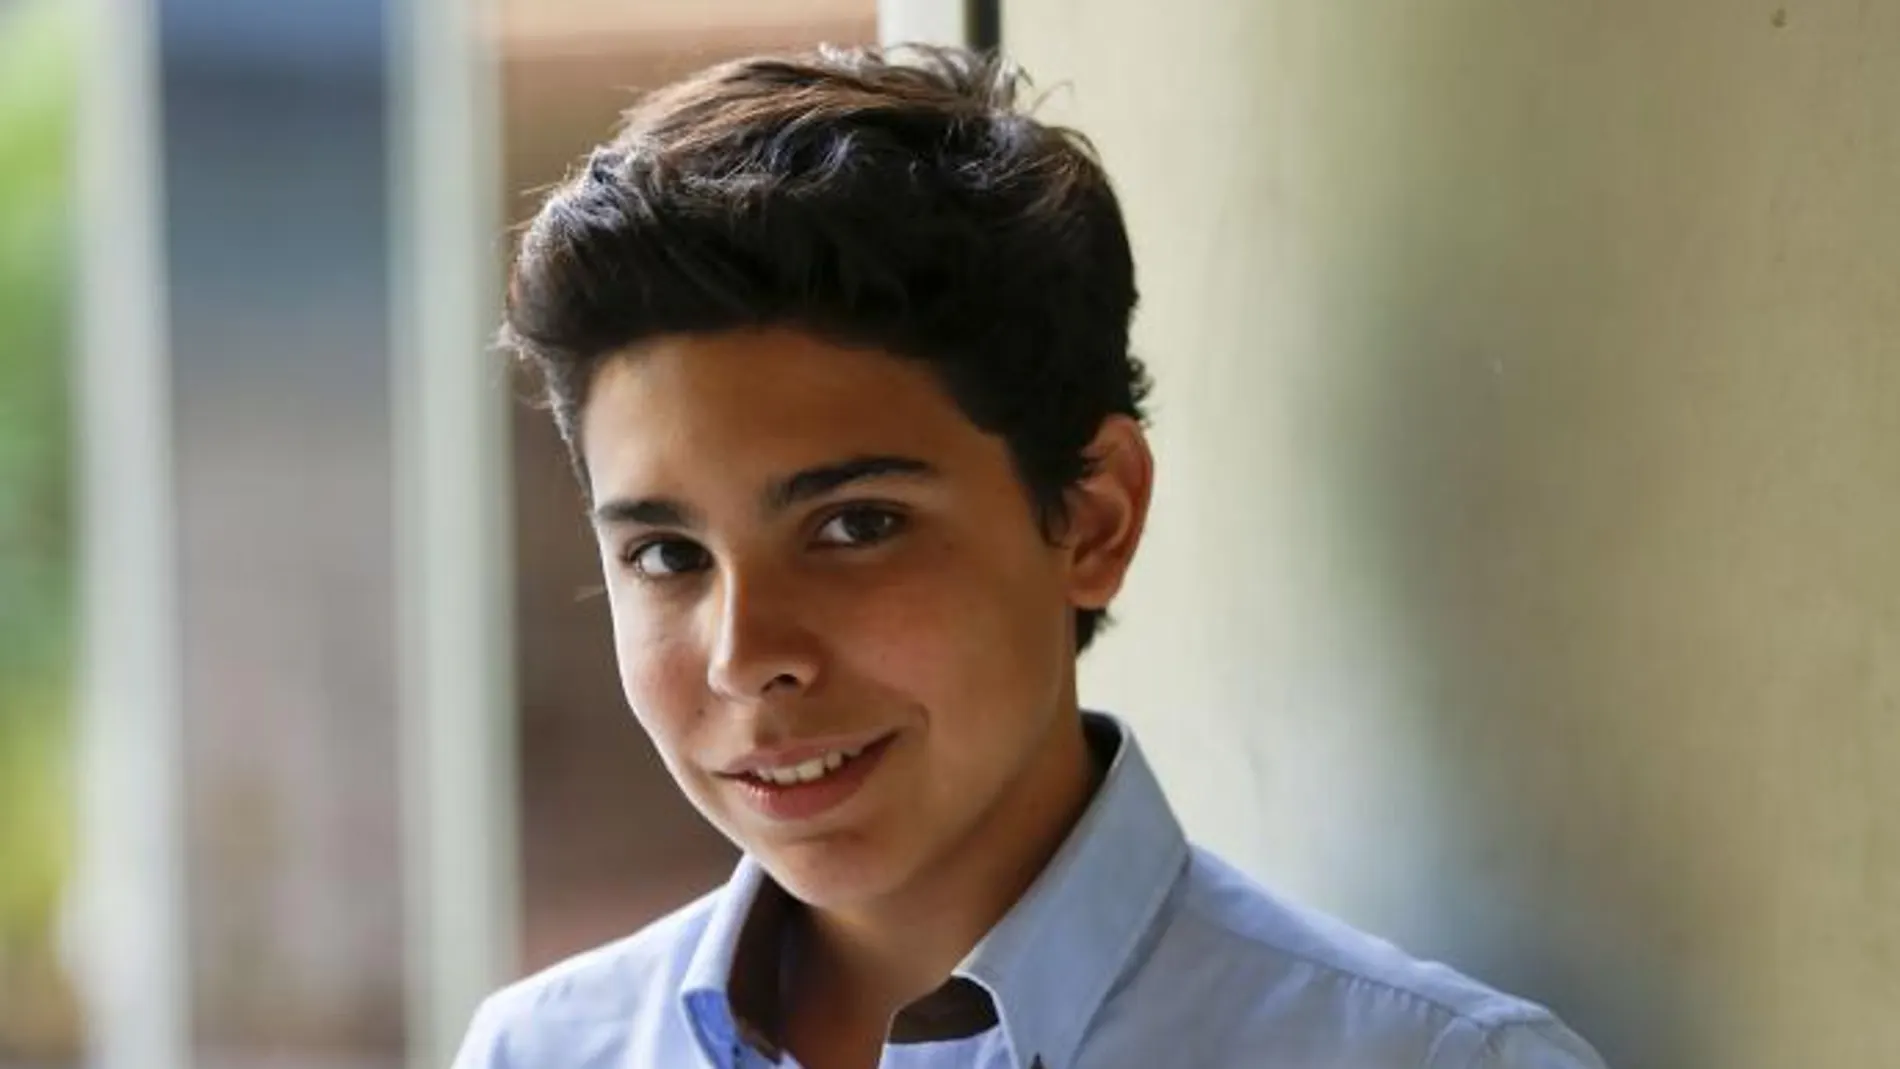 Álvaro Cabo tiene 13 años y es escritor, trainer, blogger, tertuliano, emprendedor y conferenciante